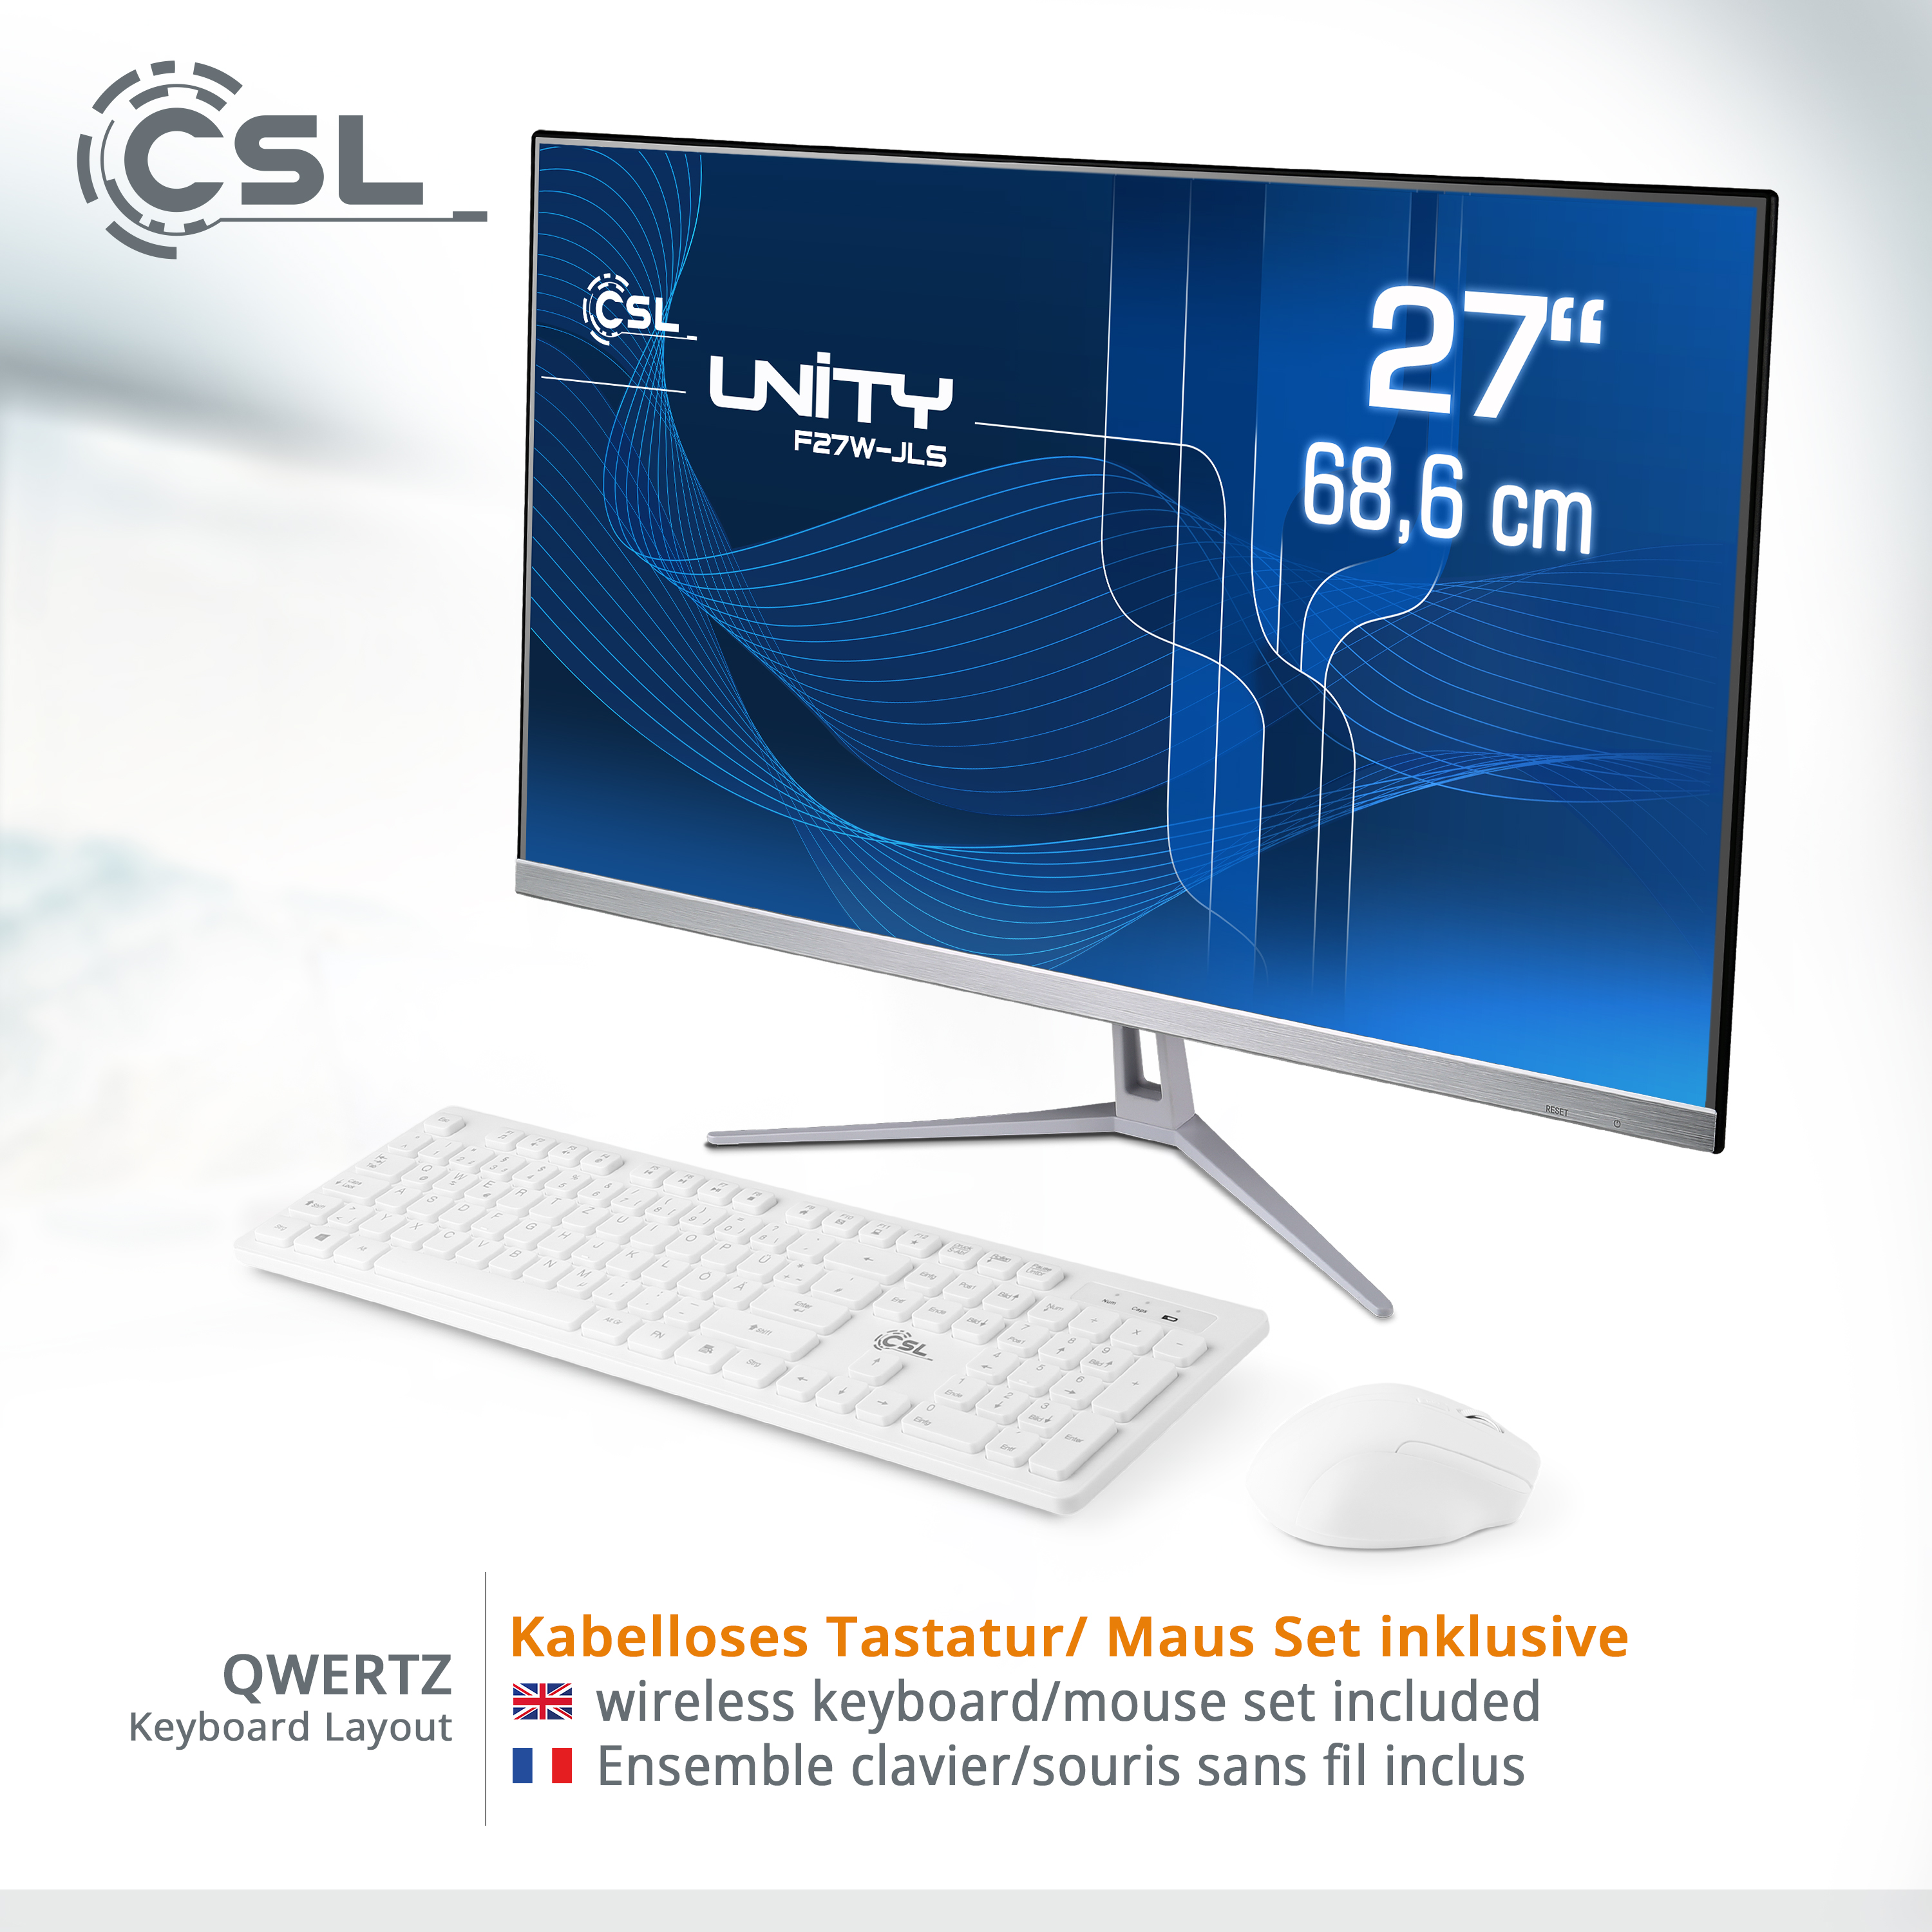 CSL Unity F27W-JLS Pentium / SSD, All-in-One-PC RAM, 2000 GB / RAM GB 16 mit Intel® / Win 10 GB weiß 2000 UHD Pro, GB 16 Zoll Display, 27 Graphics